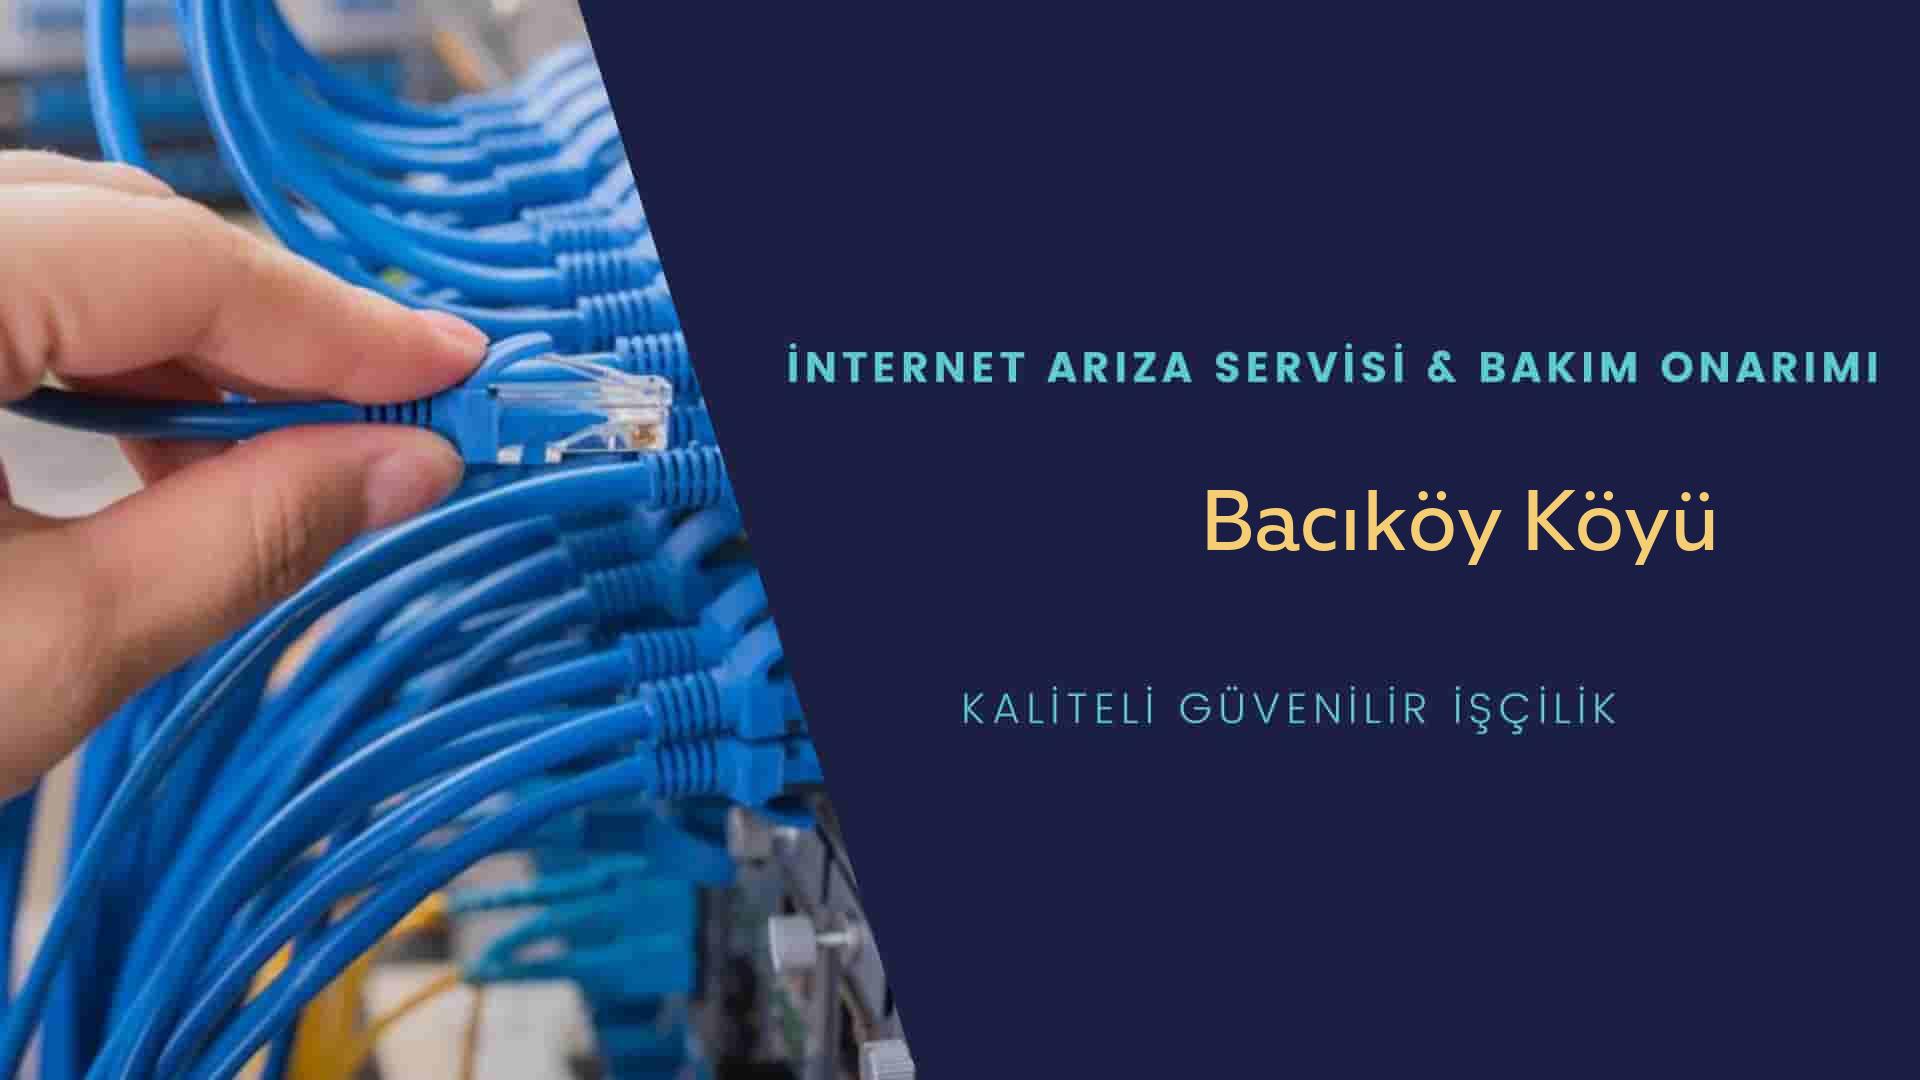 Bacıköy Köyü internet kablosu çekimi yapan yerler veya elektrikçiler mi? arıyorsunuz doğru yerdesiniz o zaman sizlere 7/24 yardımcı olacak profesyonel ustalarımız bir telefon kadar yakındır size.